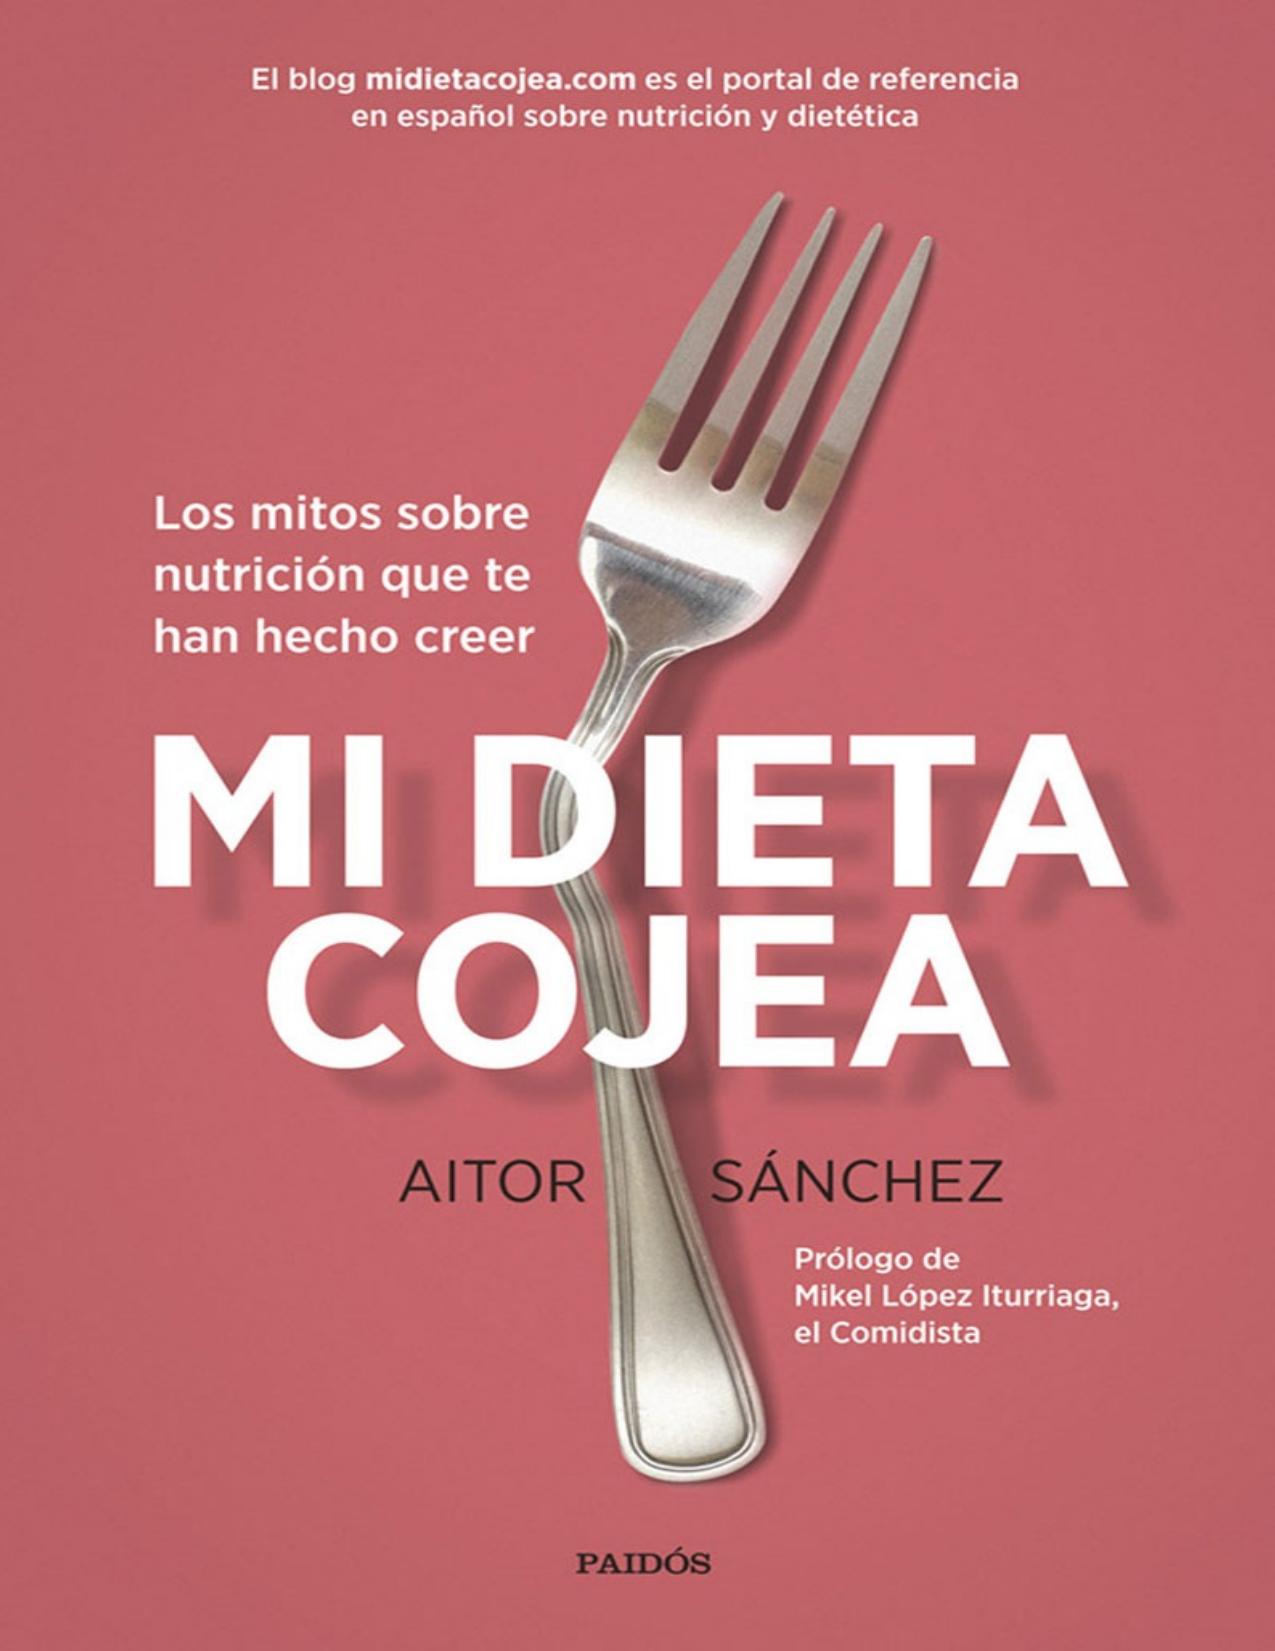 Mi dieta cojea: Los mitos sobre nutrición que te han hecho creer (Spanish Edition)